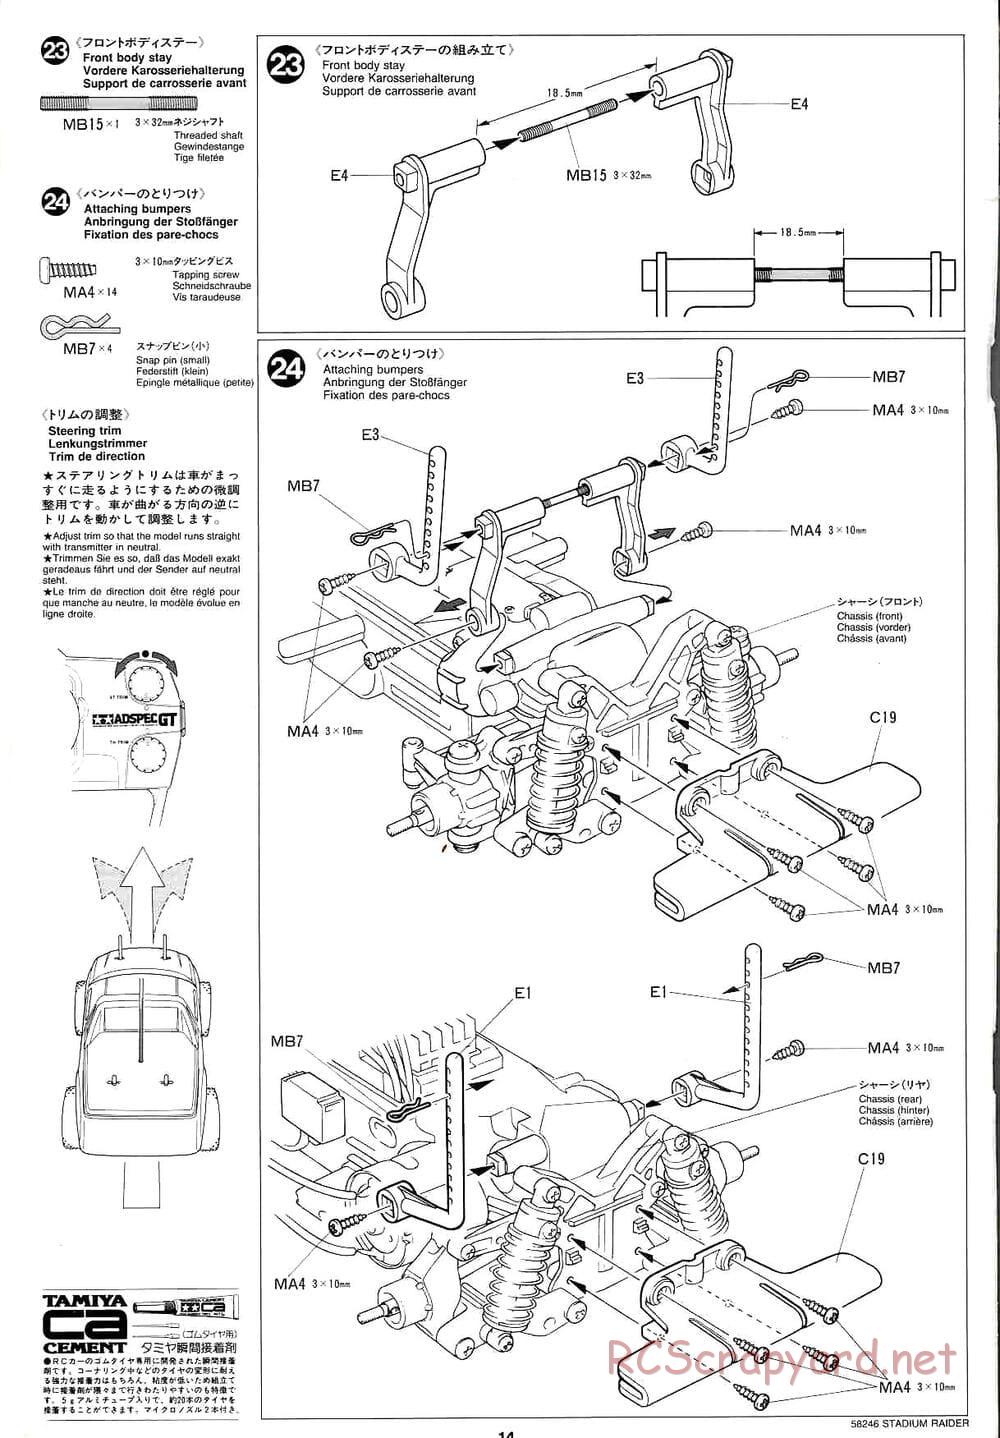 Tamiya - Stadium Raider - TL-01 Chassis - Manual - Page 14